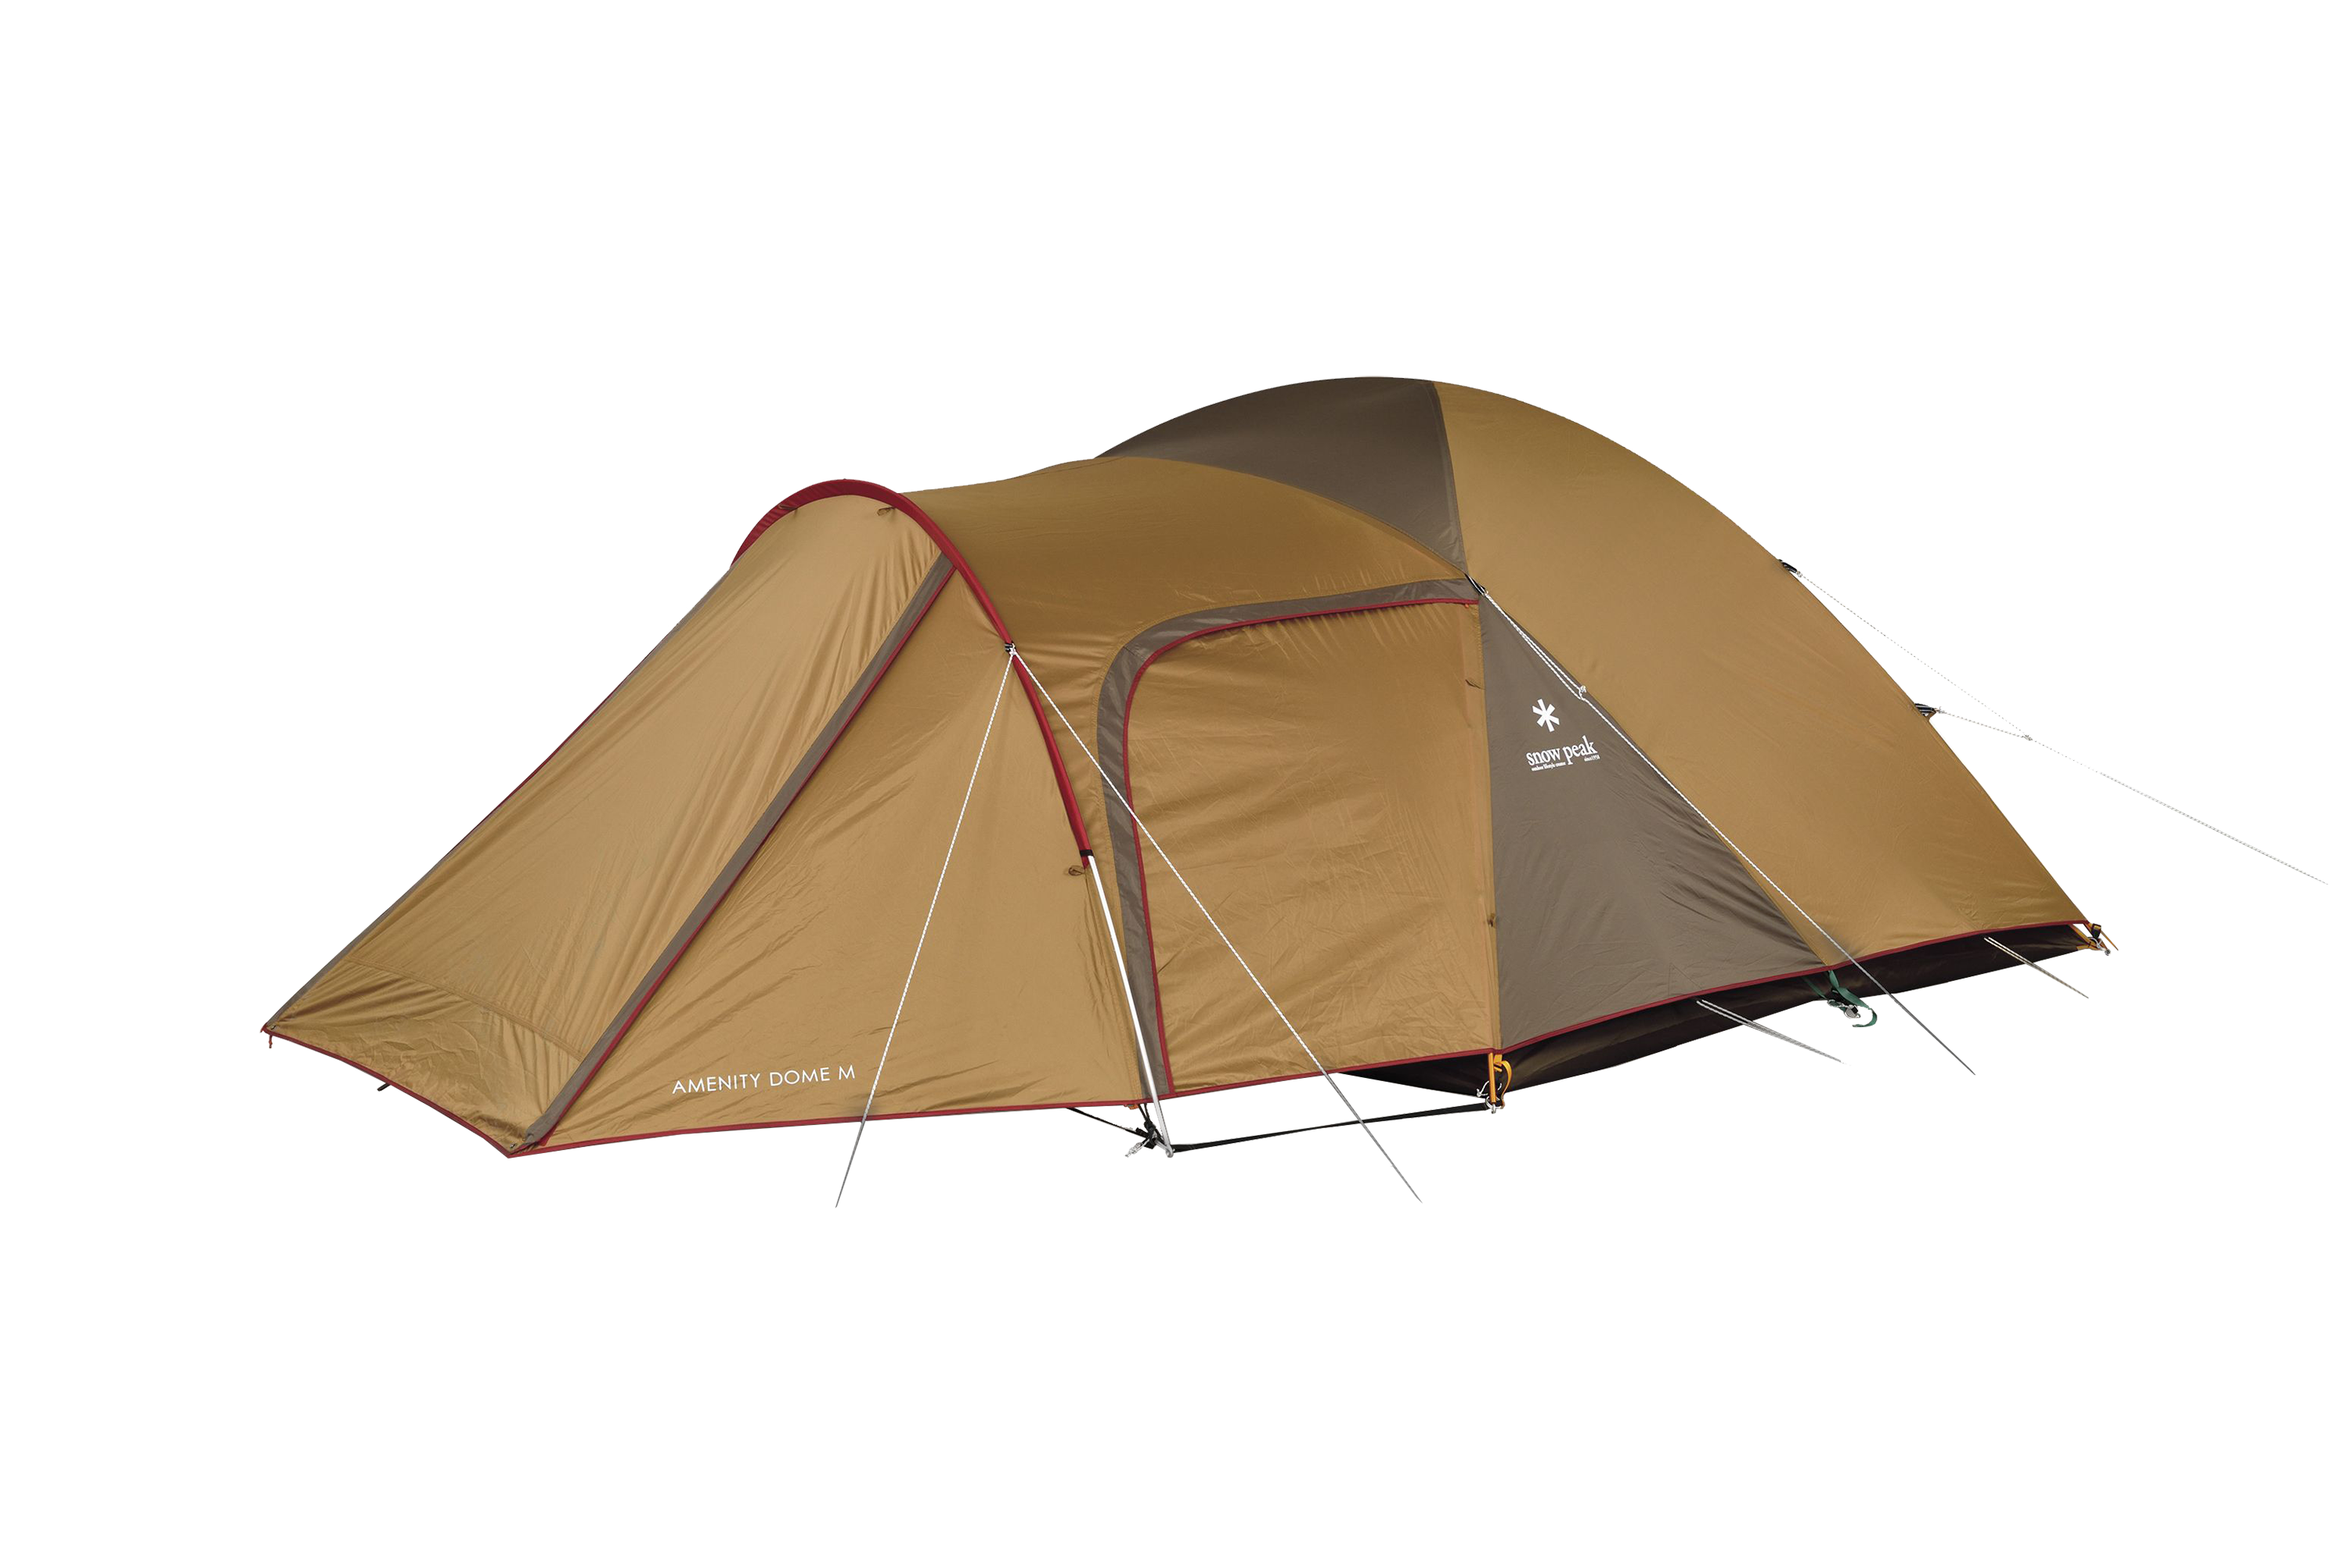 Snow Peak Amenity Dome M 4-Person Tent